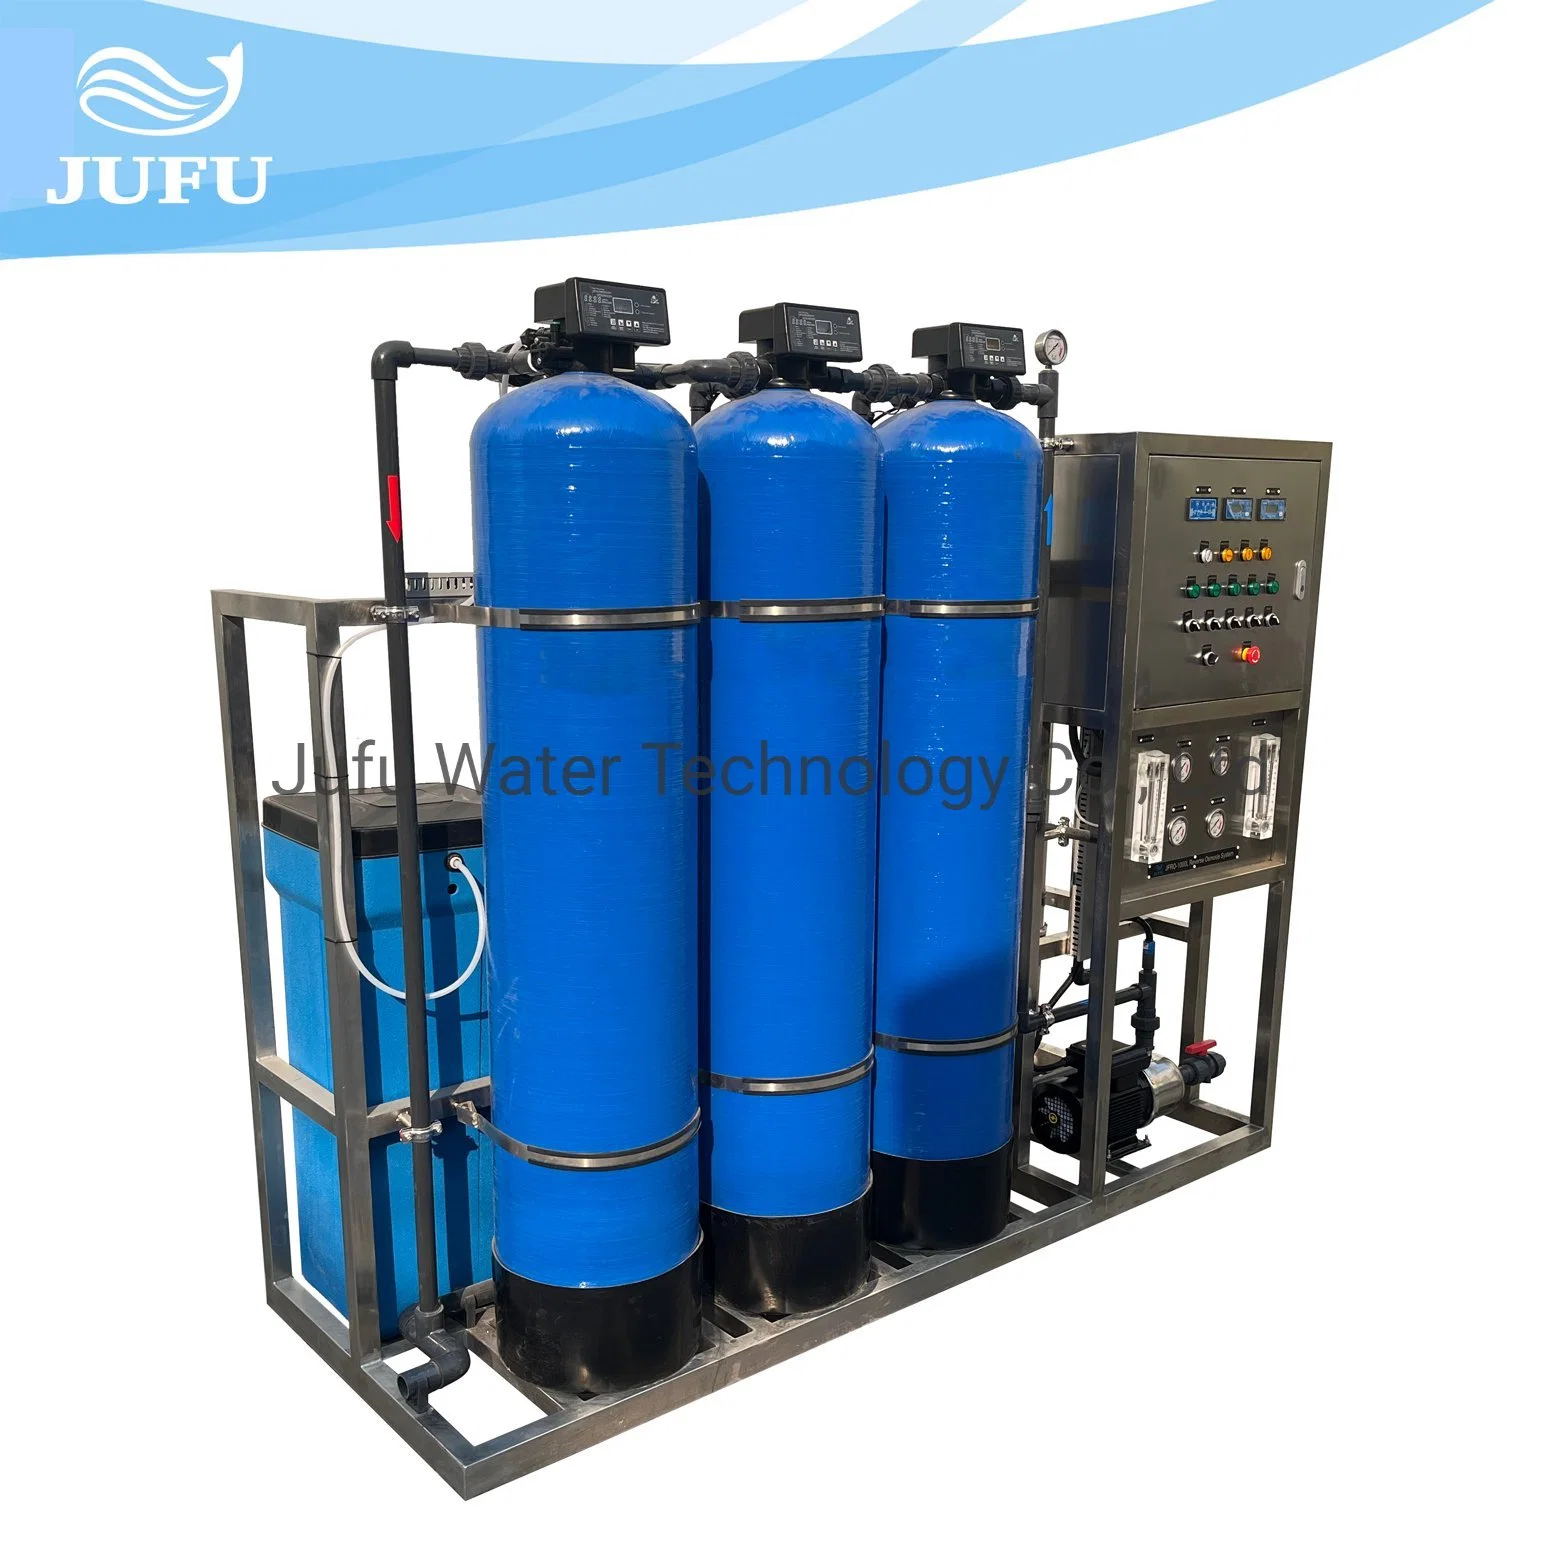 1000lph Système d'osmose inverse Filtre à eau Purificateur Dessalement Machine de traitement de l'eau Système de purification de l'eau Usine de traitement de l'eau potable RO